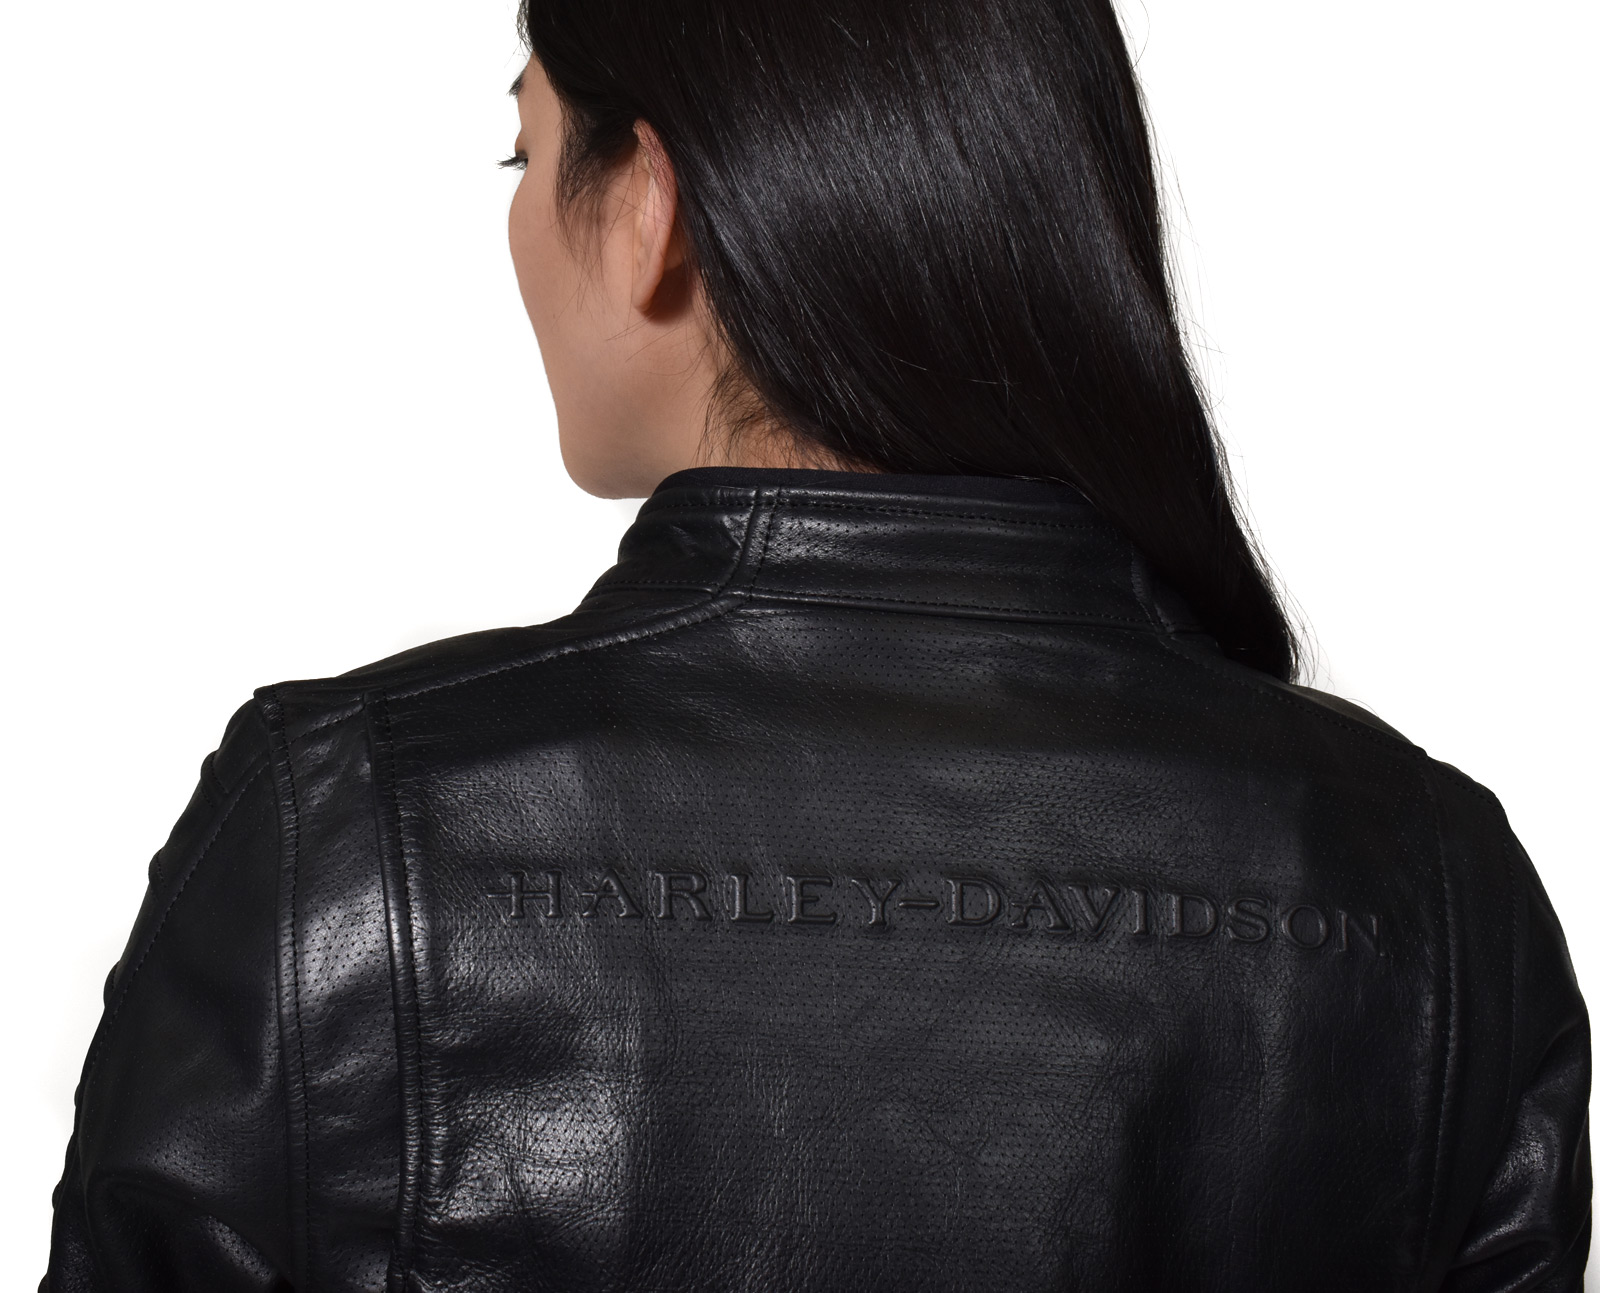 98008 20ew Harley Davidson Women S Leather Jacket Ozello Black At Thunderbike Shop